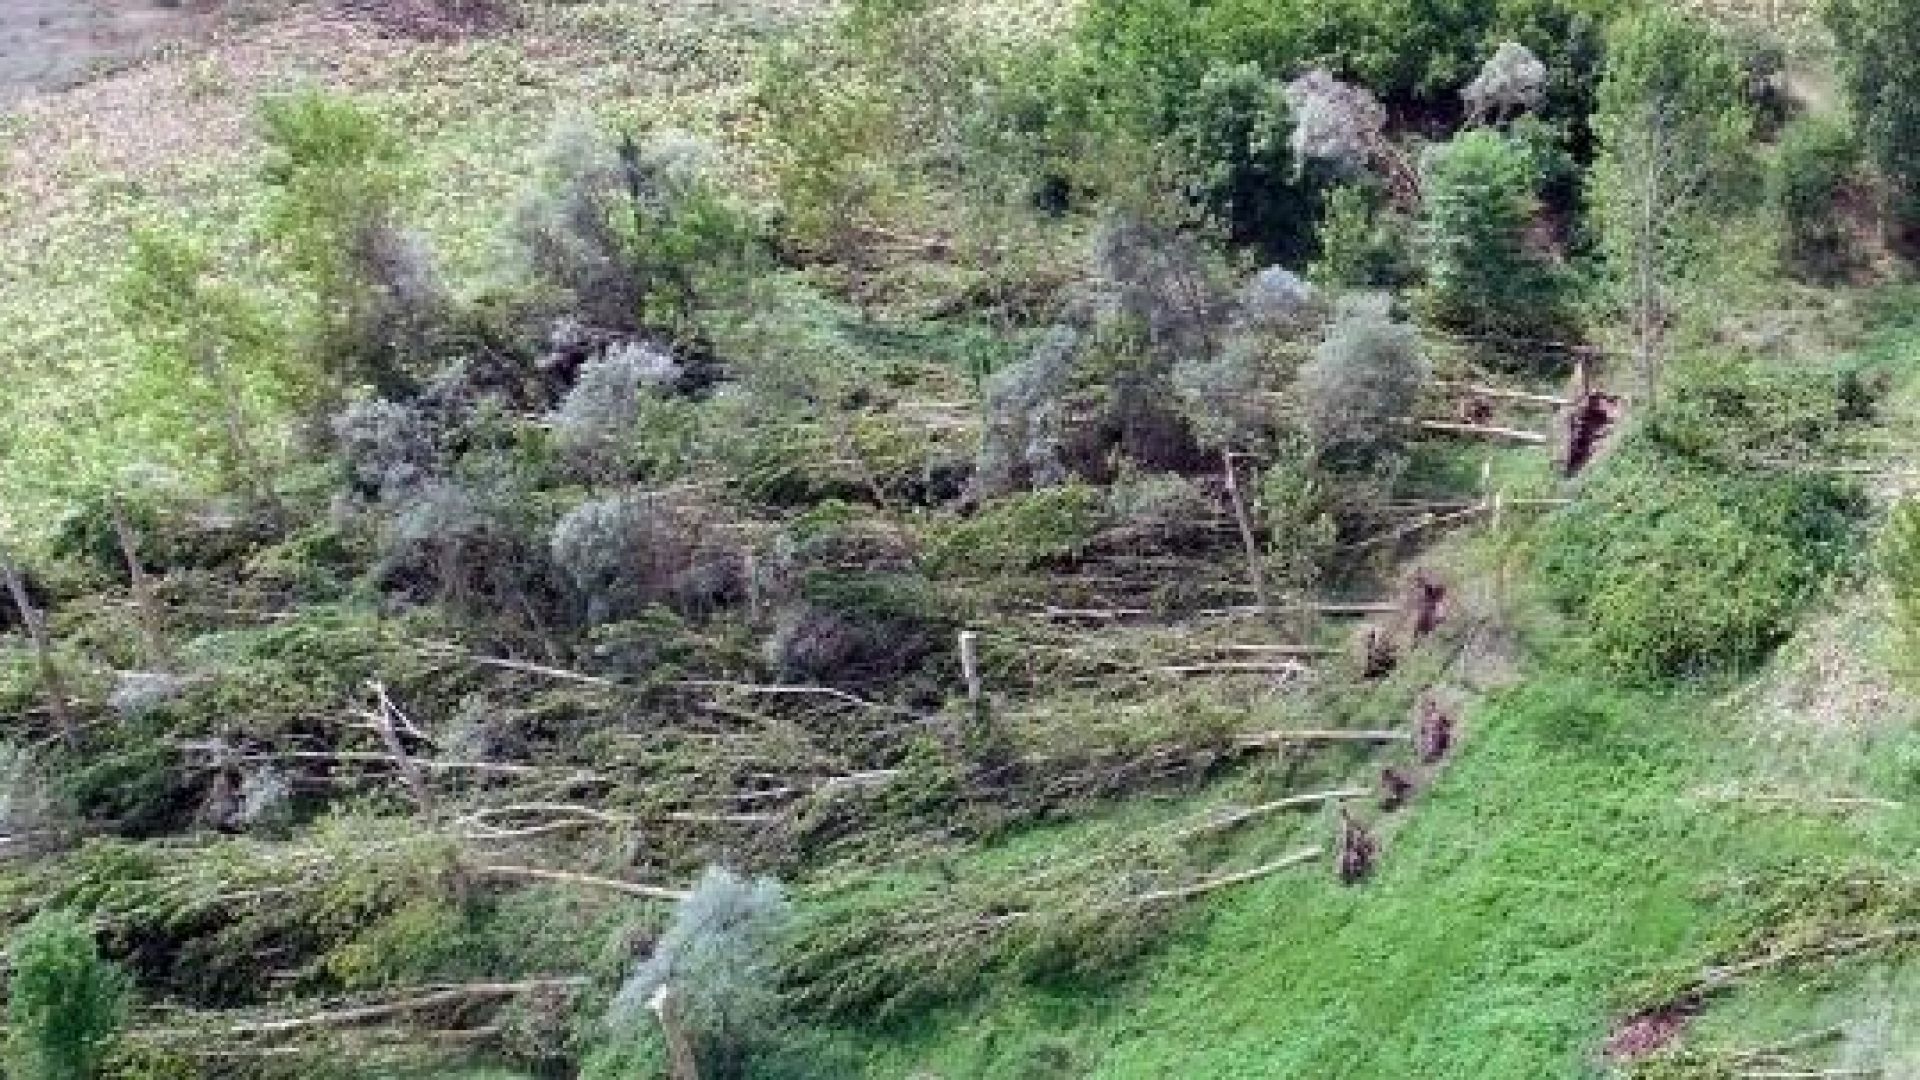 Торнадо край границата с България изкорени множество дървета в Турция